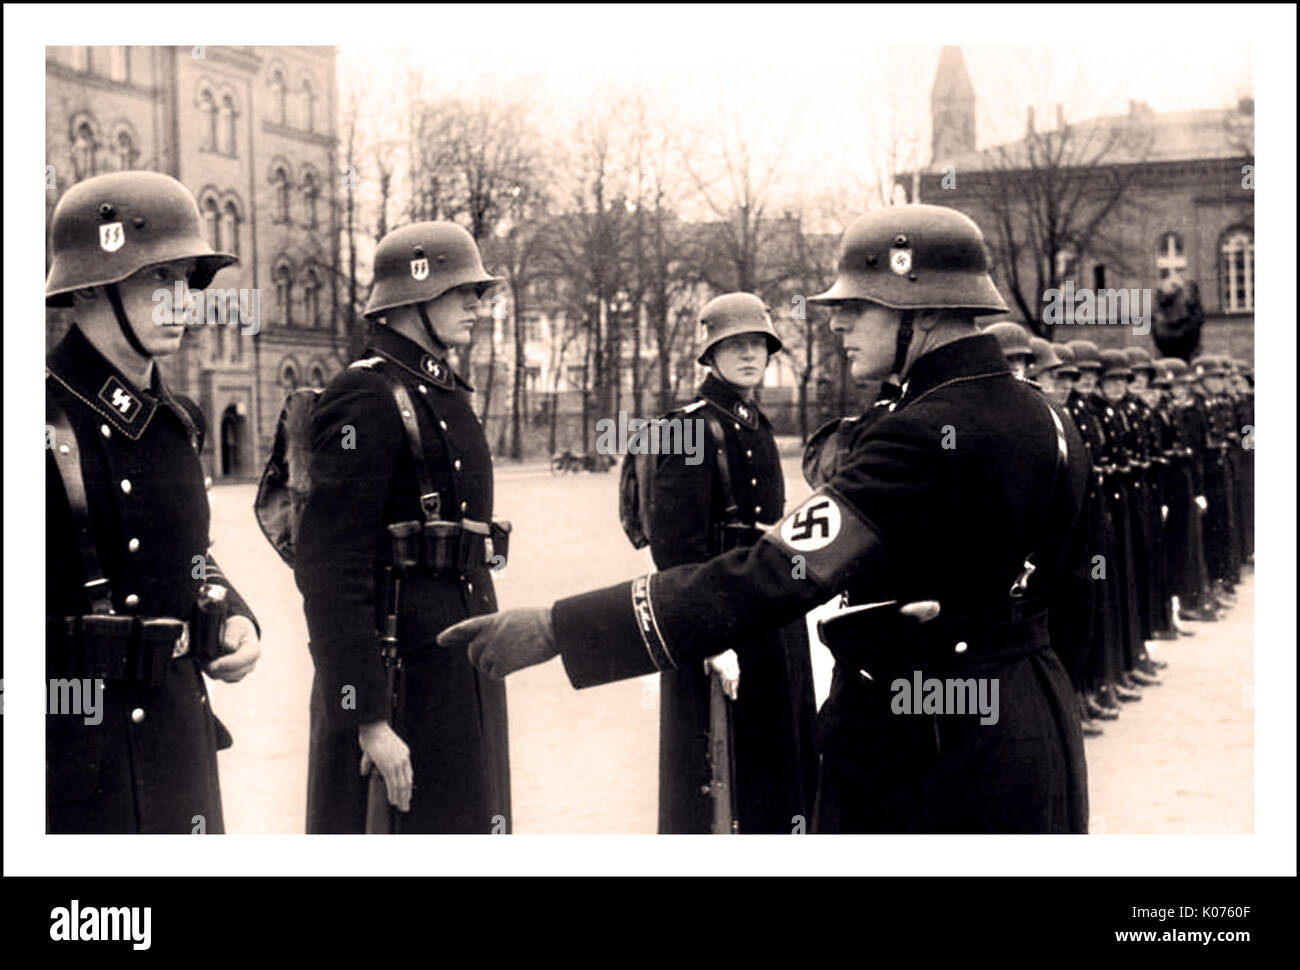 Défilé LEIBSTANDARTE Vintage pre-WW2 photo en noir et blanc d'hommes de "Leibstandarte Adolf Hitler" Waffen SS troupes à la caserne Lichterfelde à Berlin, Allemagne, le 22 novembre 1938. Banque D'Images